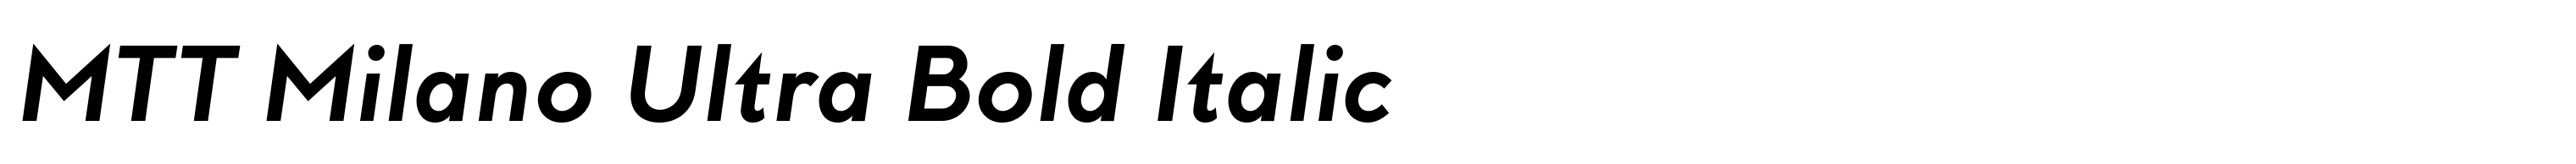 MTT Milano Ultra Bold Italic